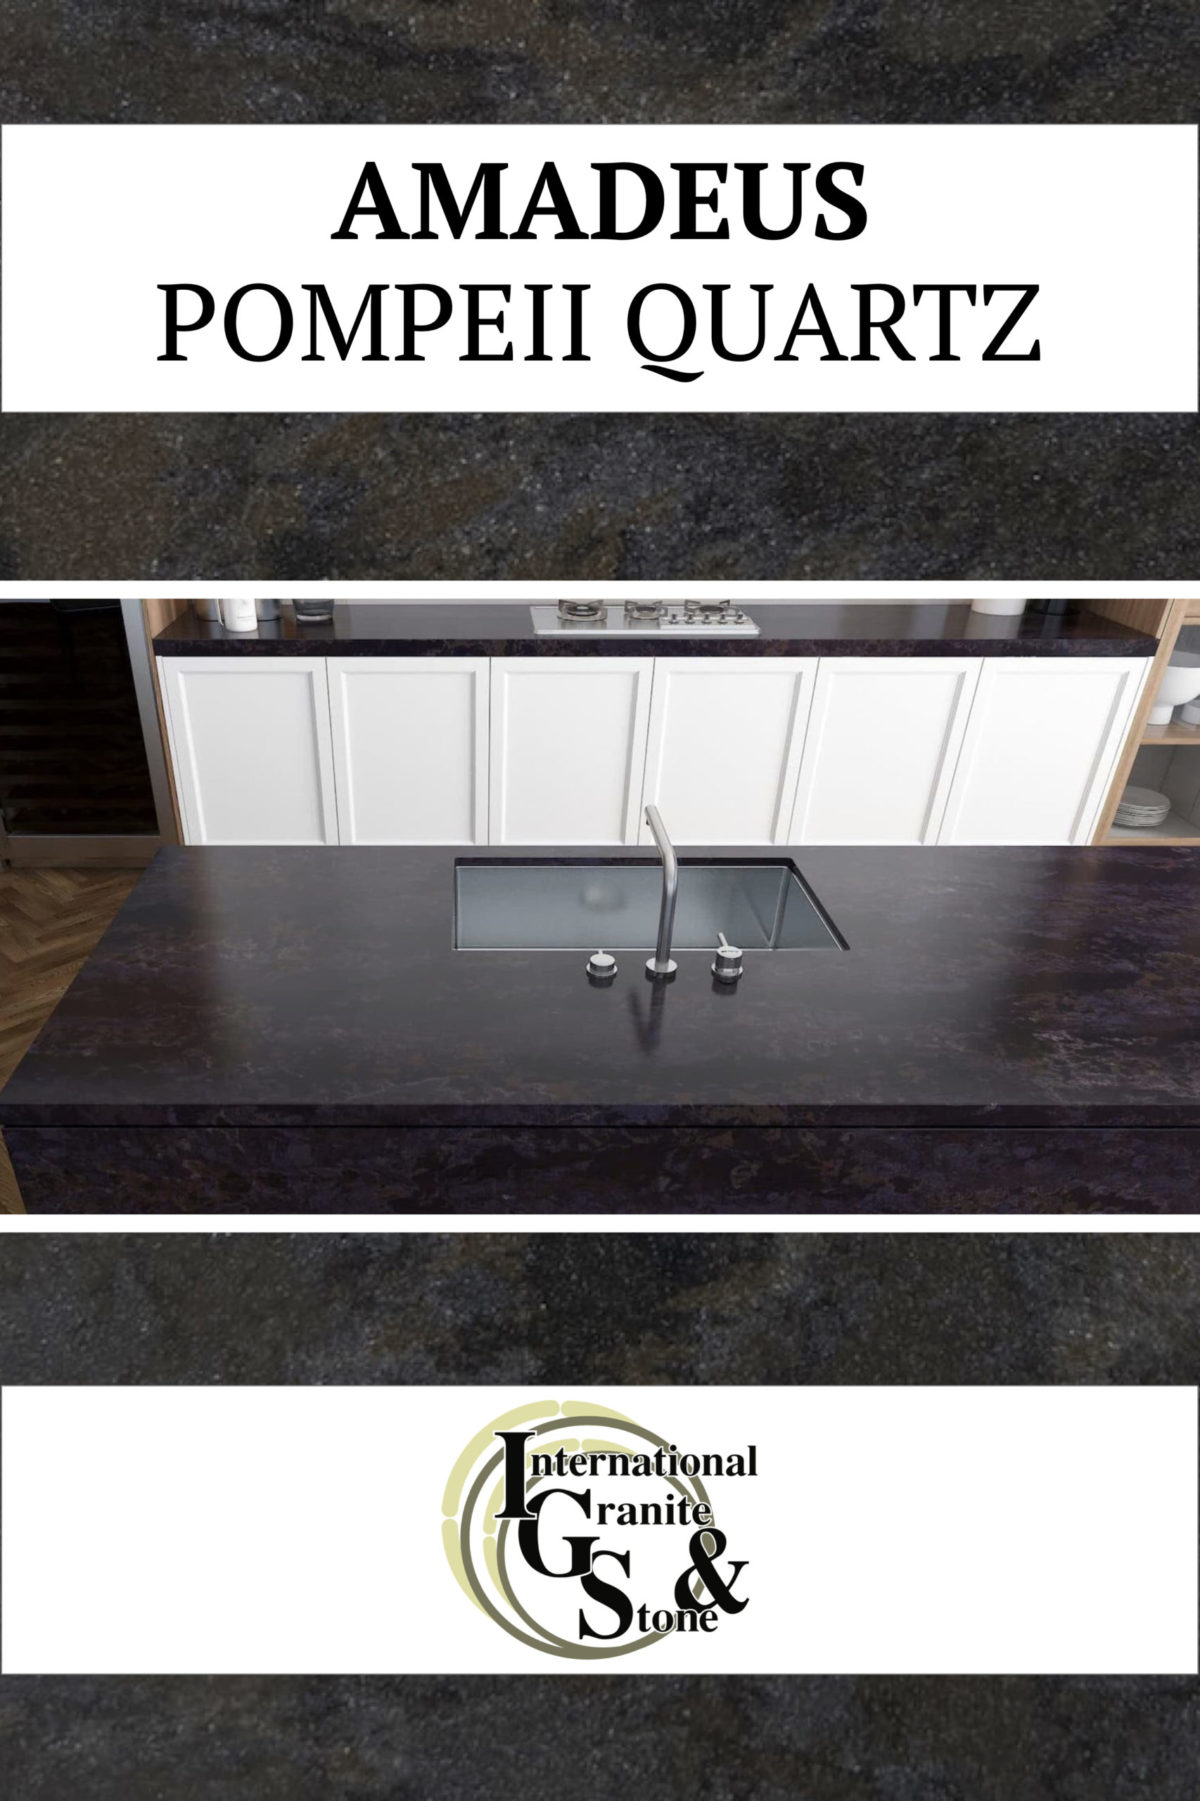 Amadeus Pompeii Quartz